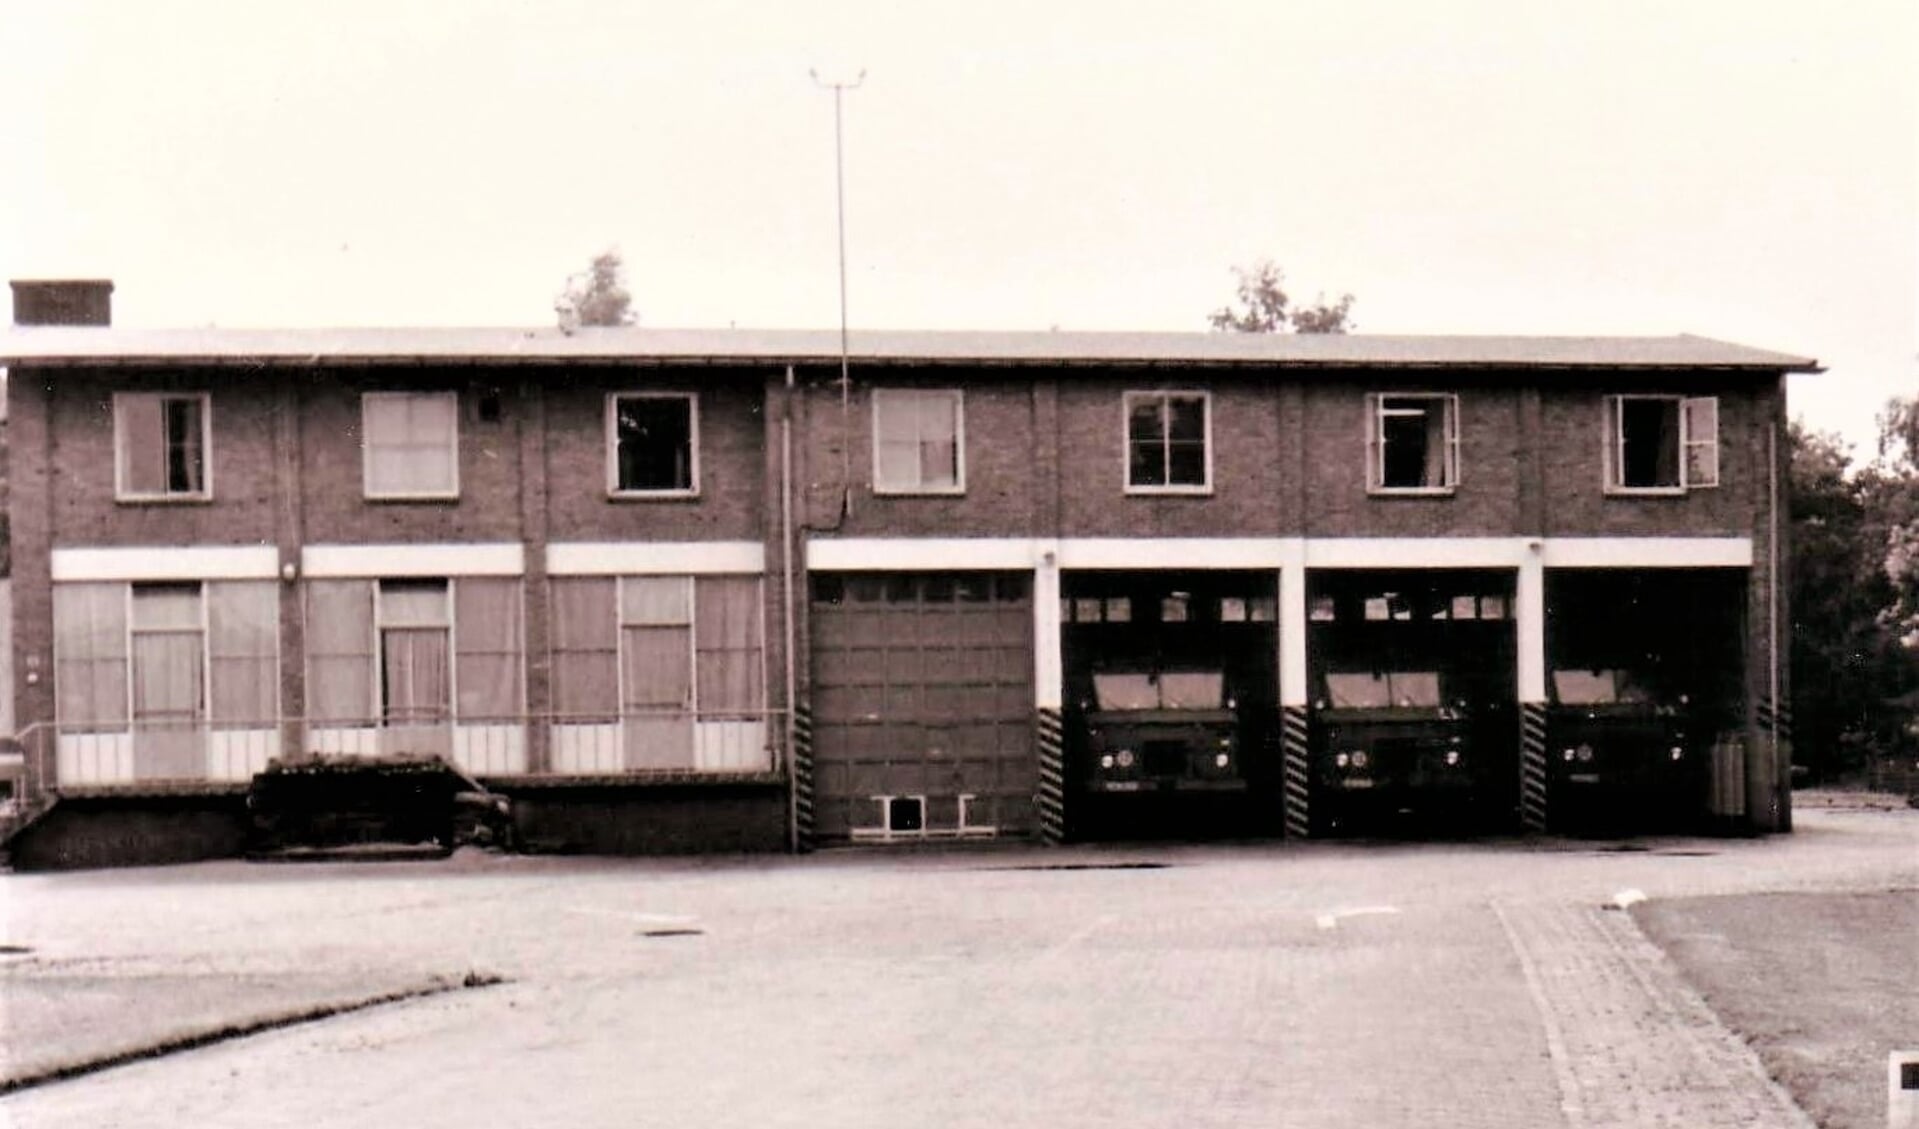 De oude brandweerkazerne op de voormalige vliegbasis Soesterberg.